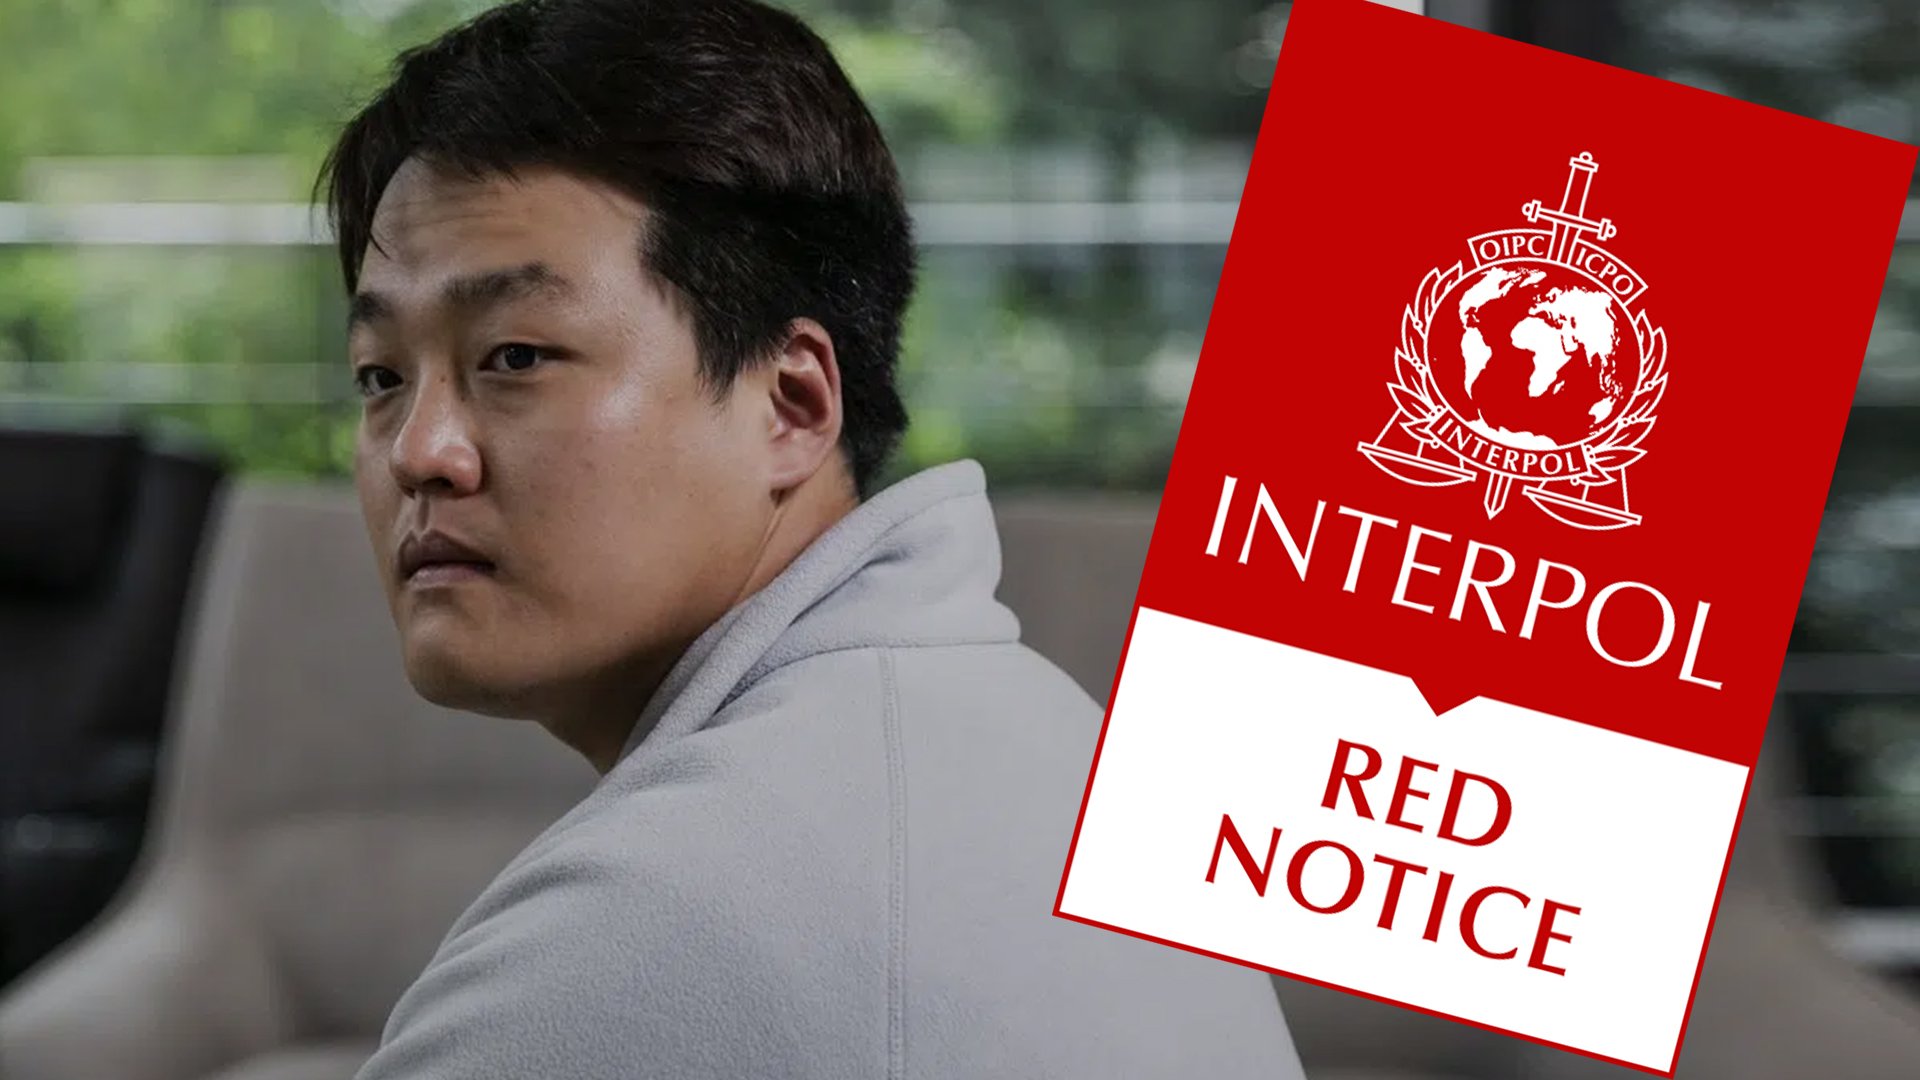 Do-kwon Interpol Rednotice